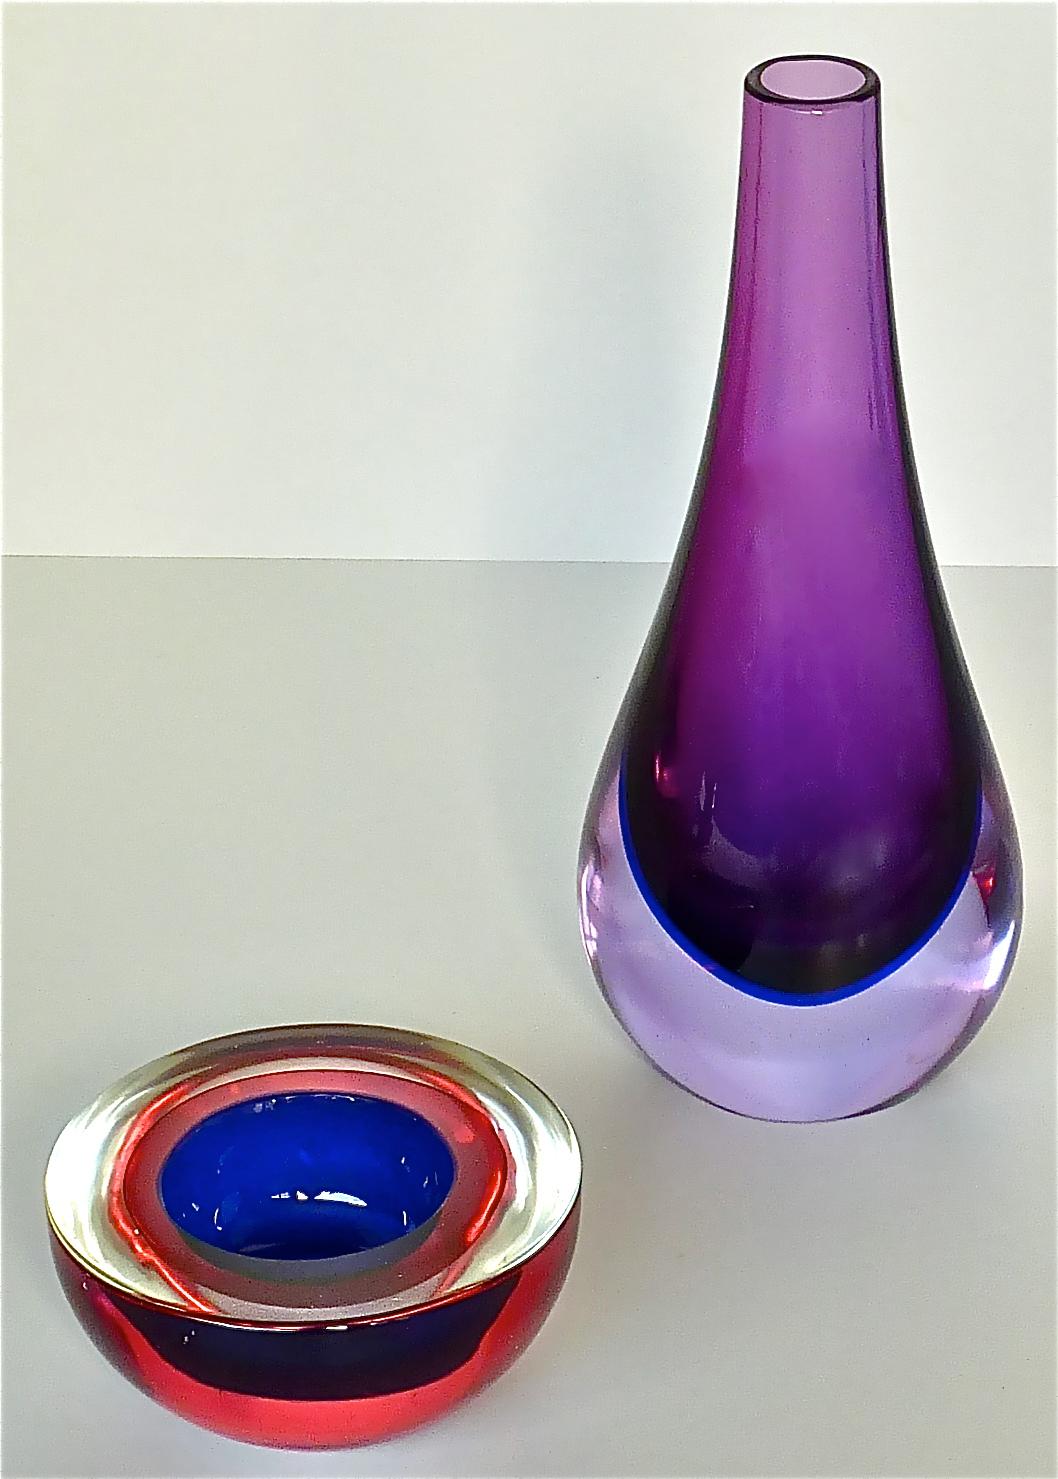 Wunderschöne Vase aus Kunstglas und eine dazu passende Schale, entworfen von Flavio Poli für Seguso Vetri d'Arte um 1950 in Murano, Italien. Die in Sommerso